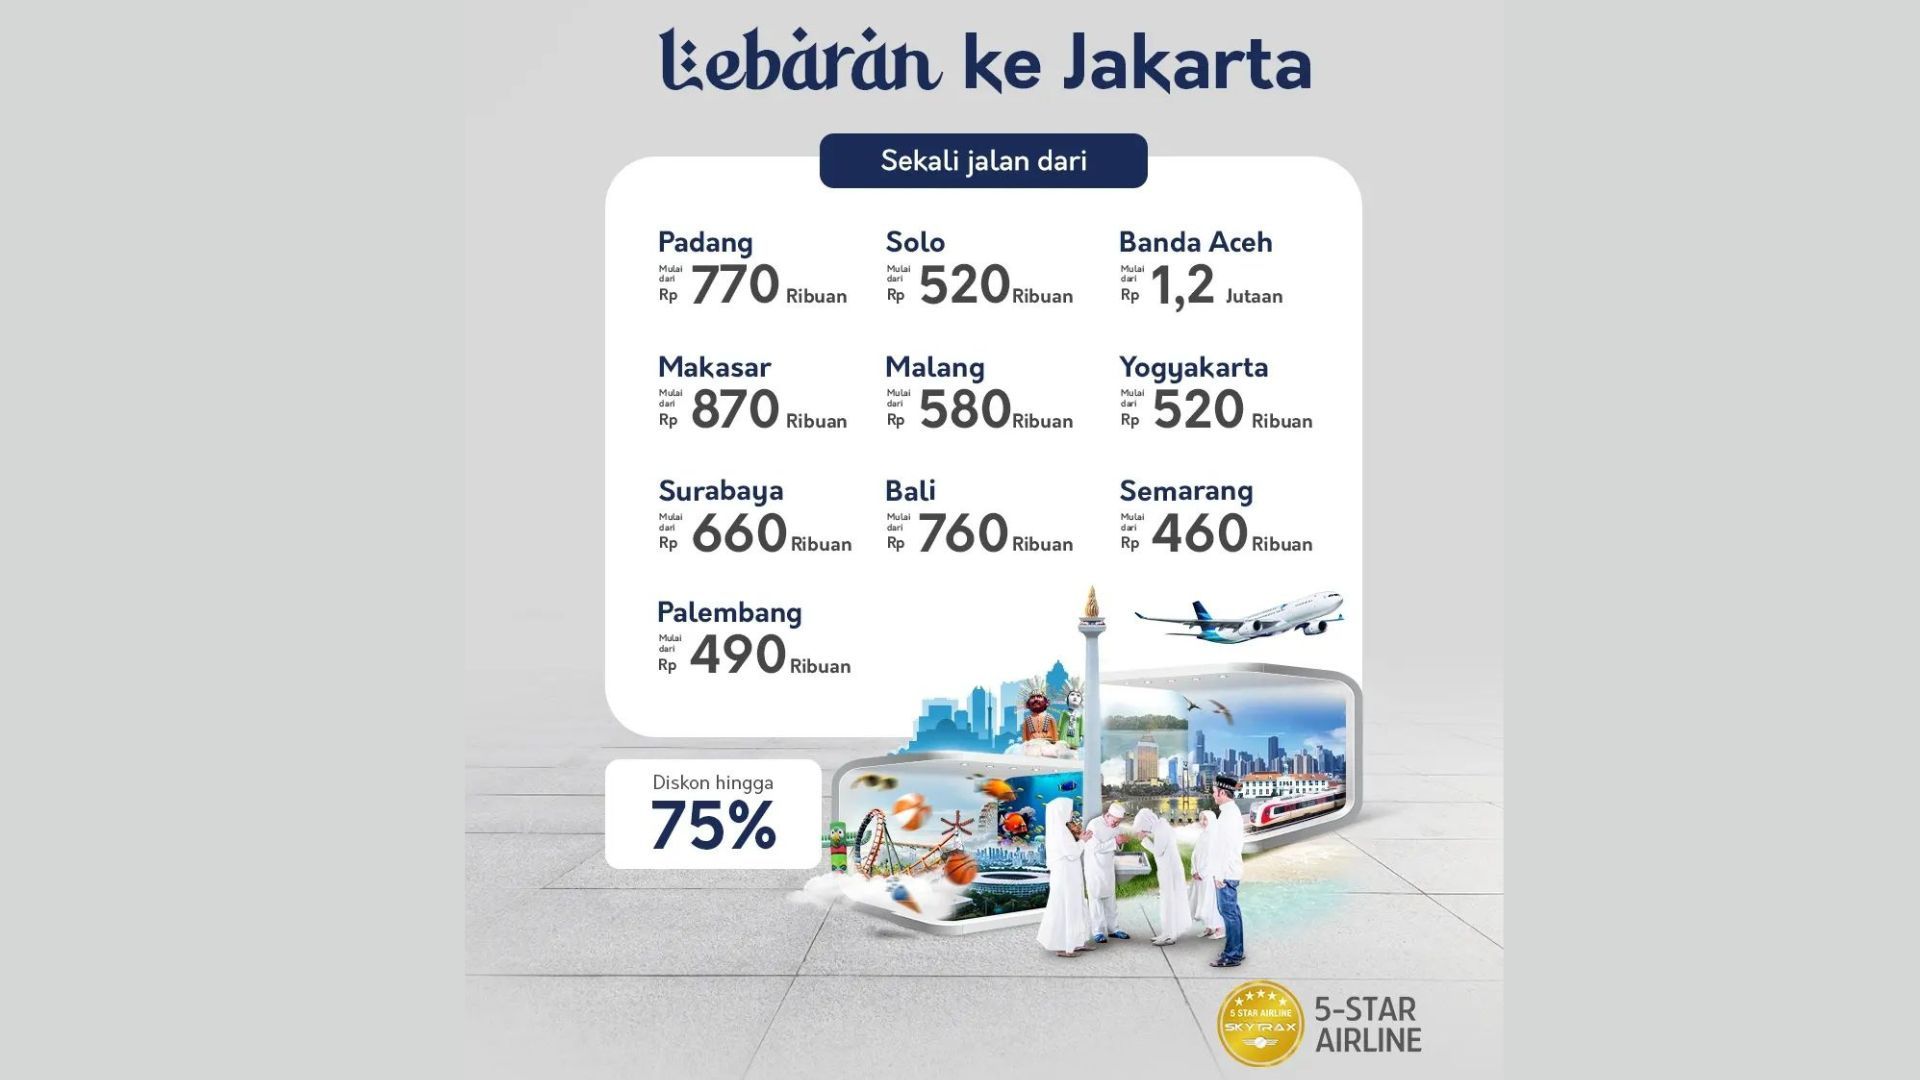 Harga tiket promo lebaran ke Jakarta dengan Garuda Indonesia./ Wensite/ Garuda Indonesia